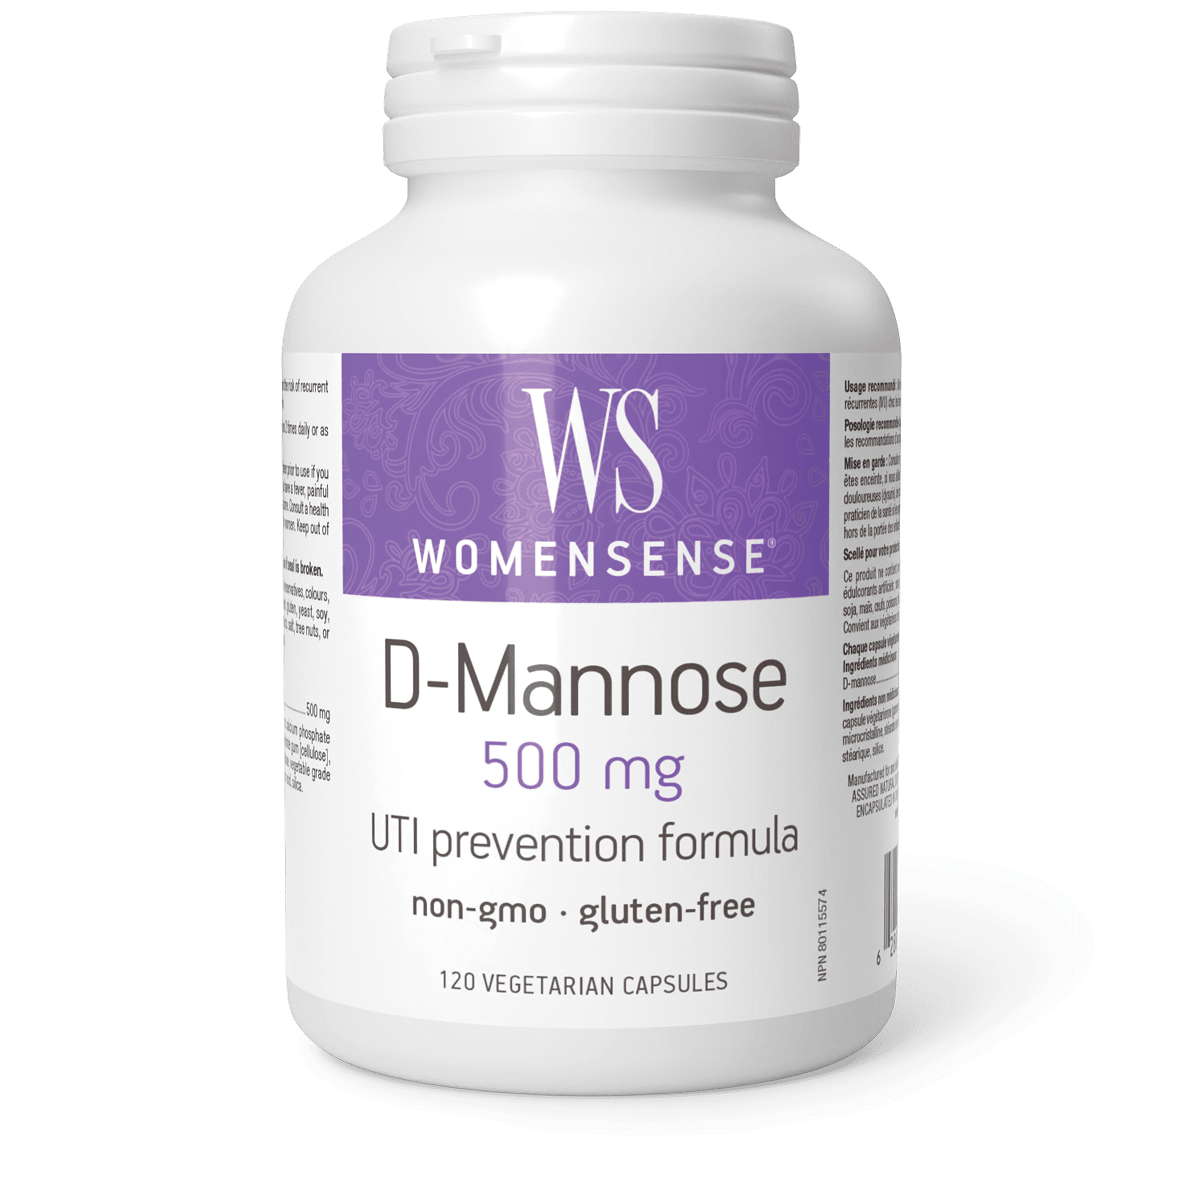 WomenSense D-Mannose 500 Mg 120 Veggie Caps Supplements - Bladder & Kidney Health at Village Vitamin Store